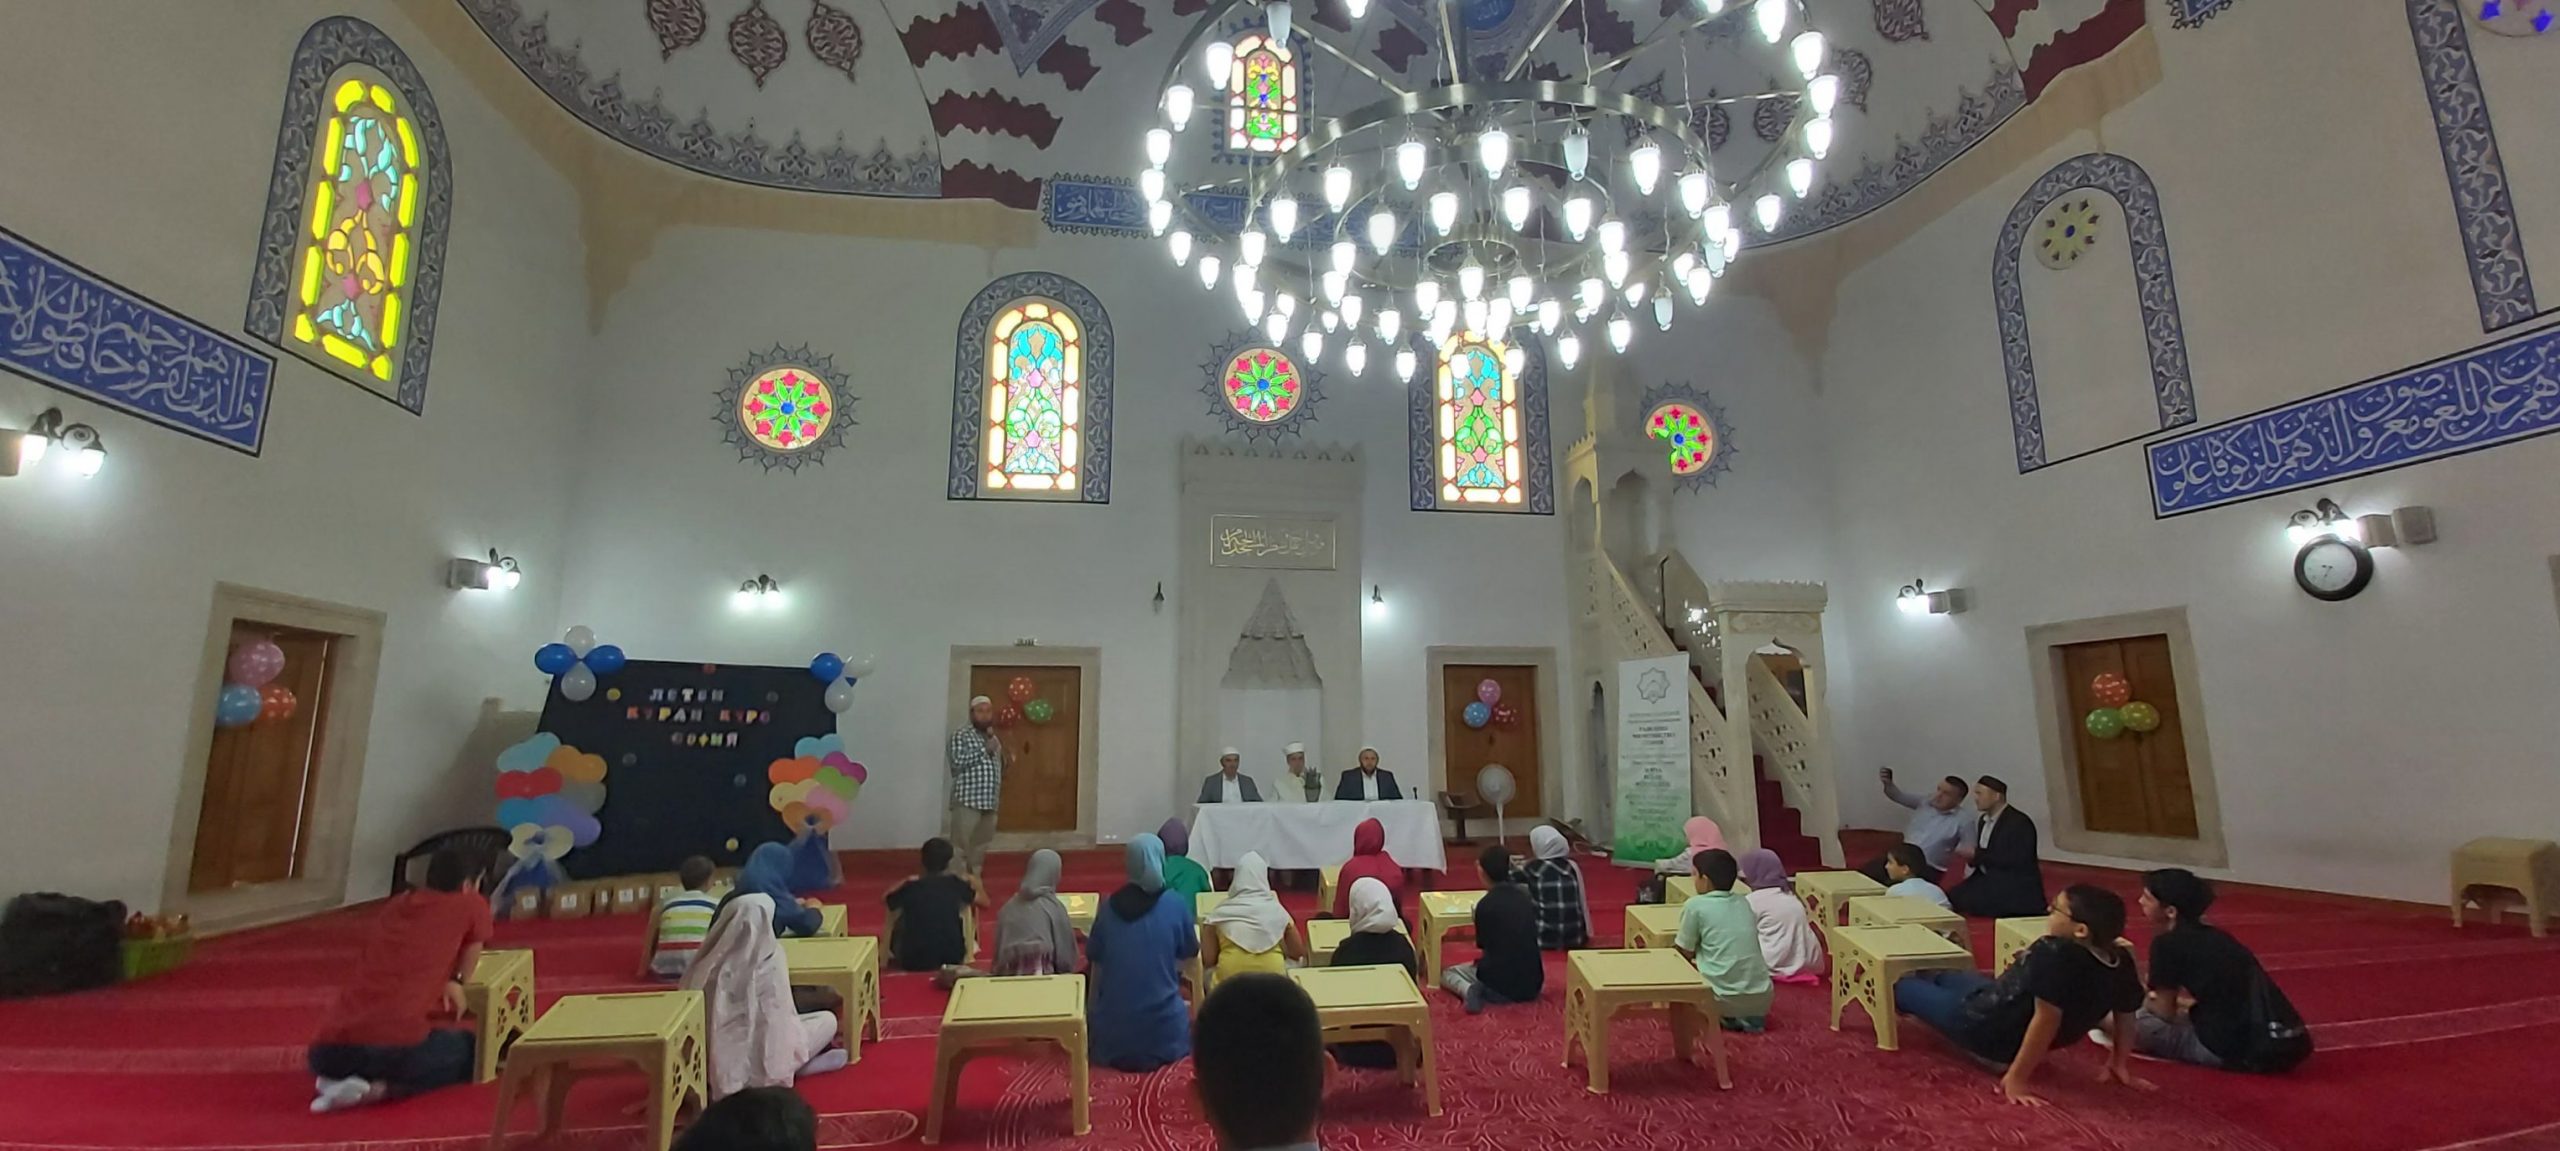 تعد دورات القرآن الكريم من أهم وأبرز الأنشطة التعليمية التي تشرف عليها مباشرة دار الافتاء العامة في بلغاريا